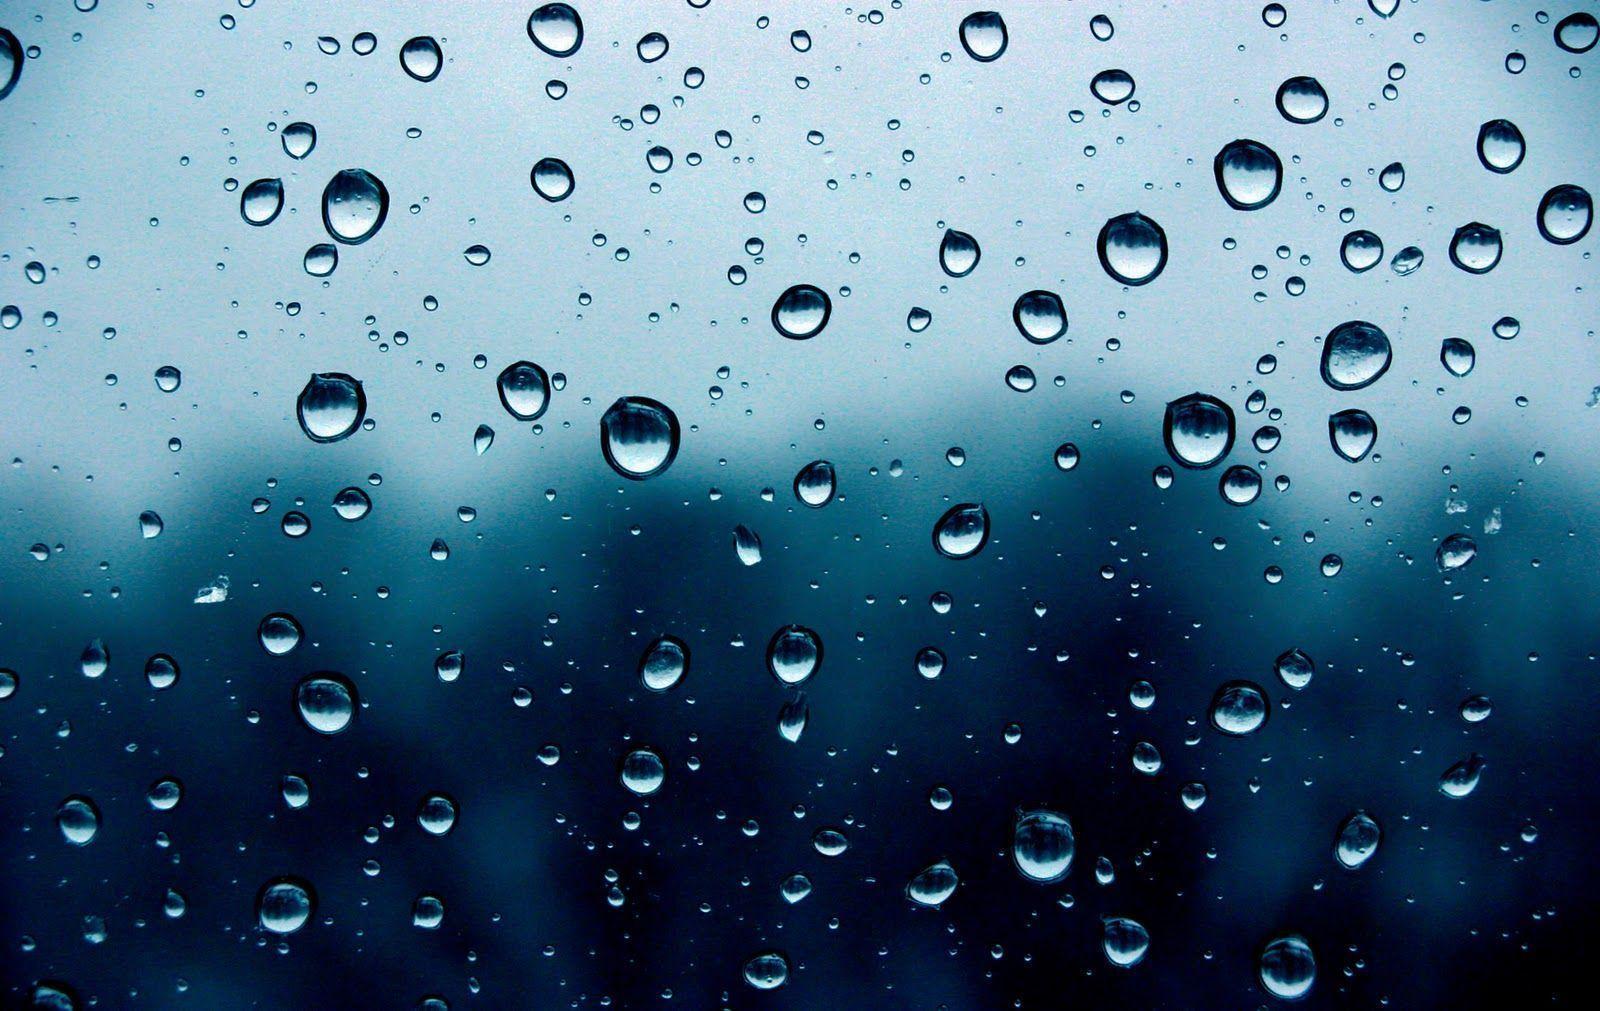 Rain Drop on Window Wallpaper. Free Download HD Wallpaper